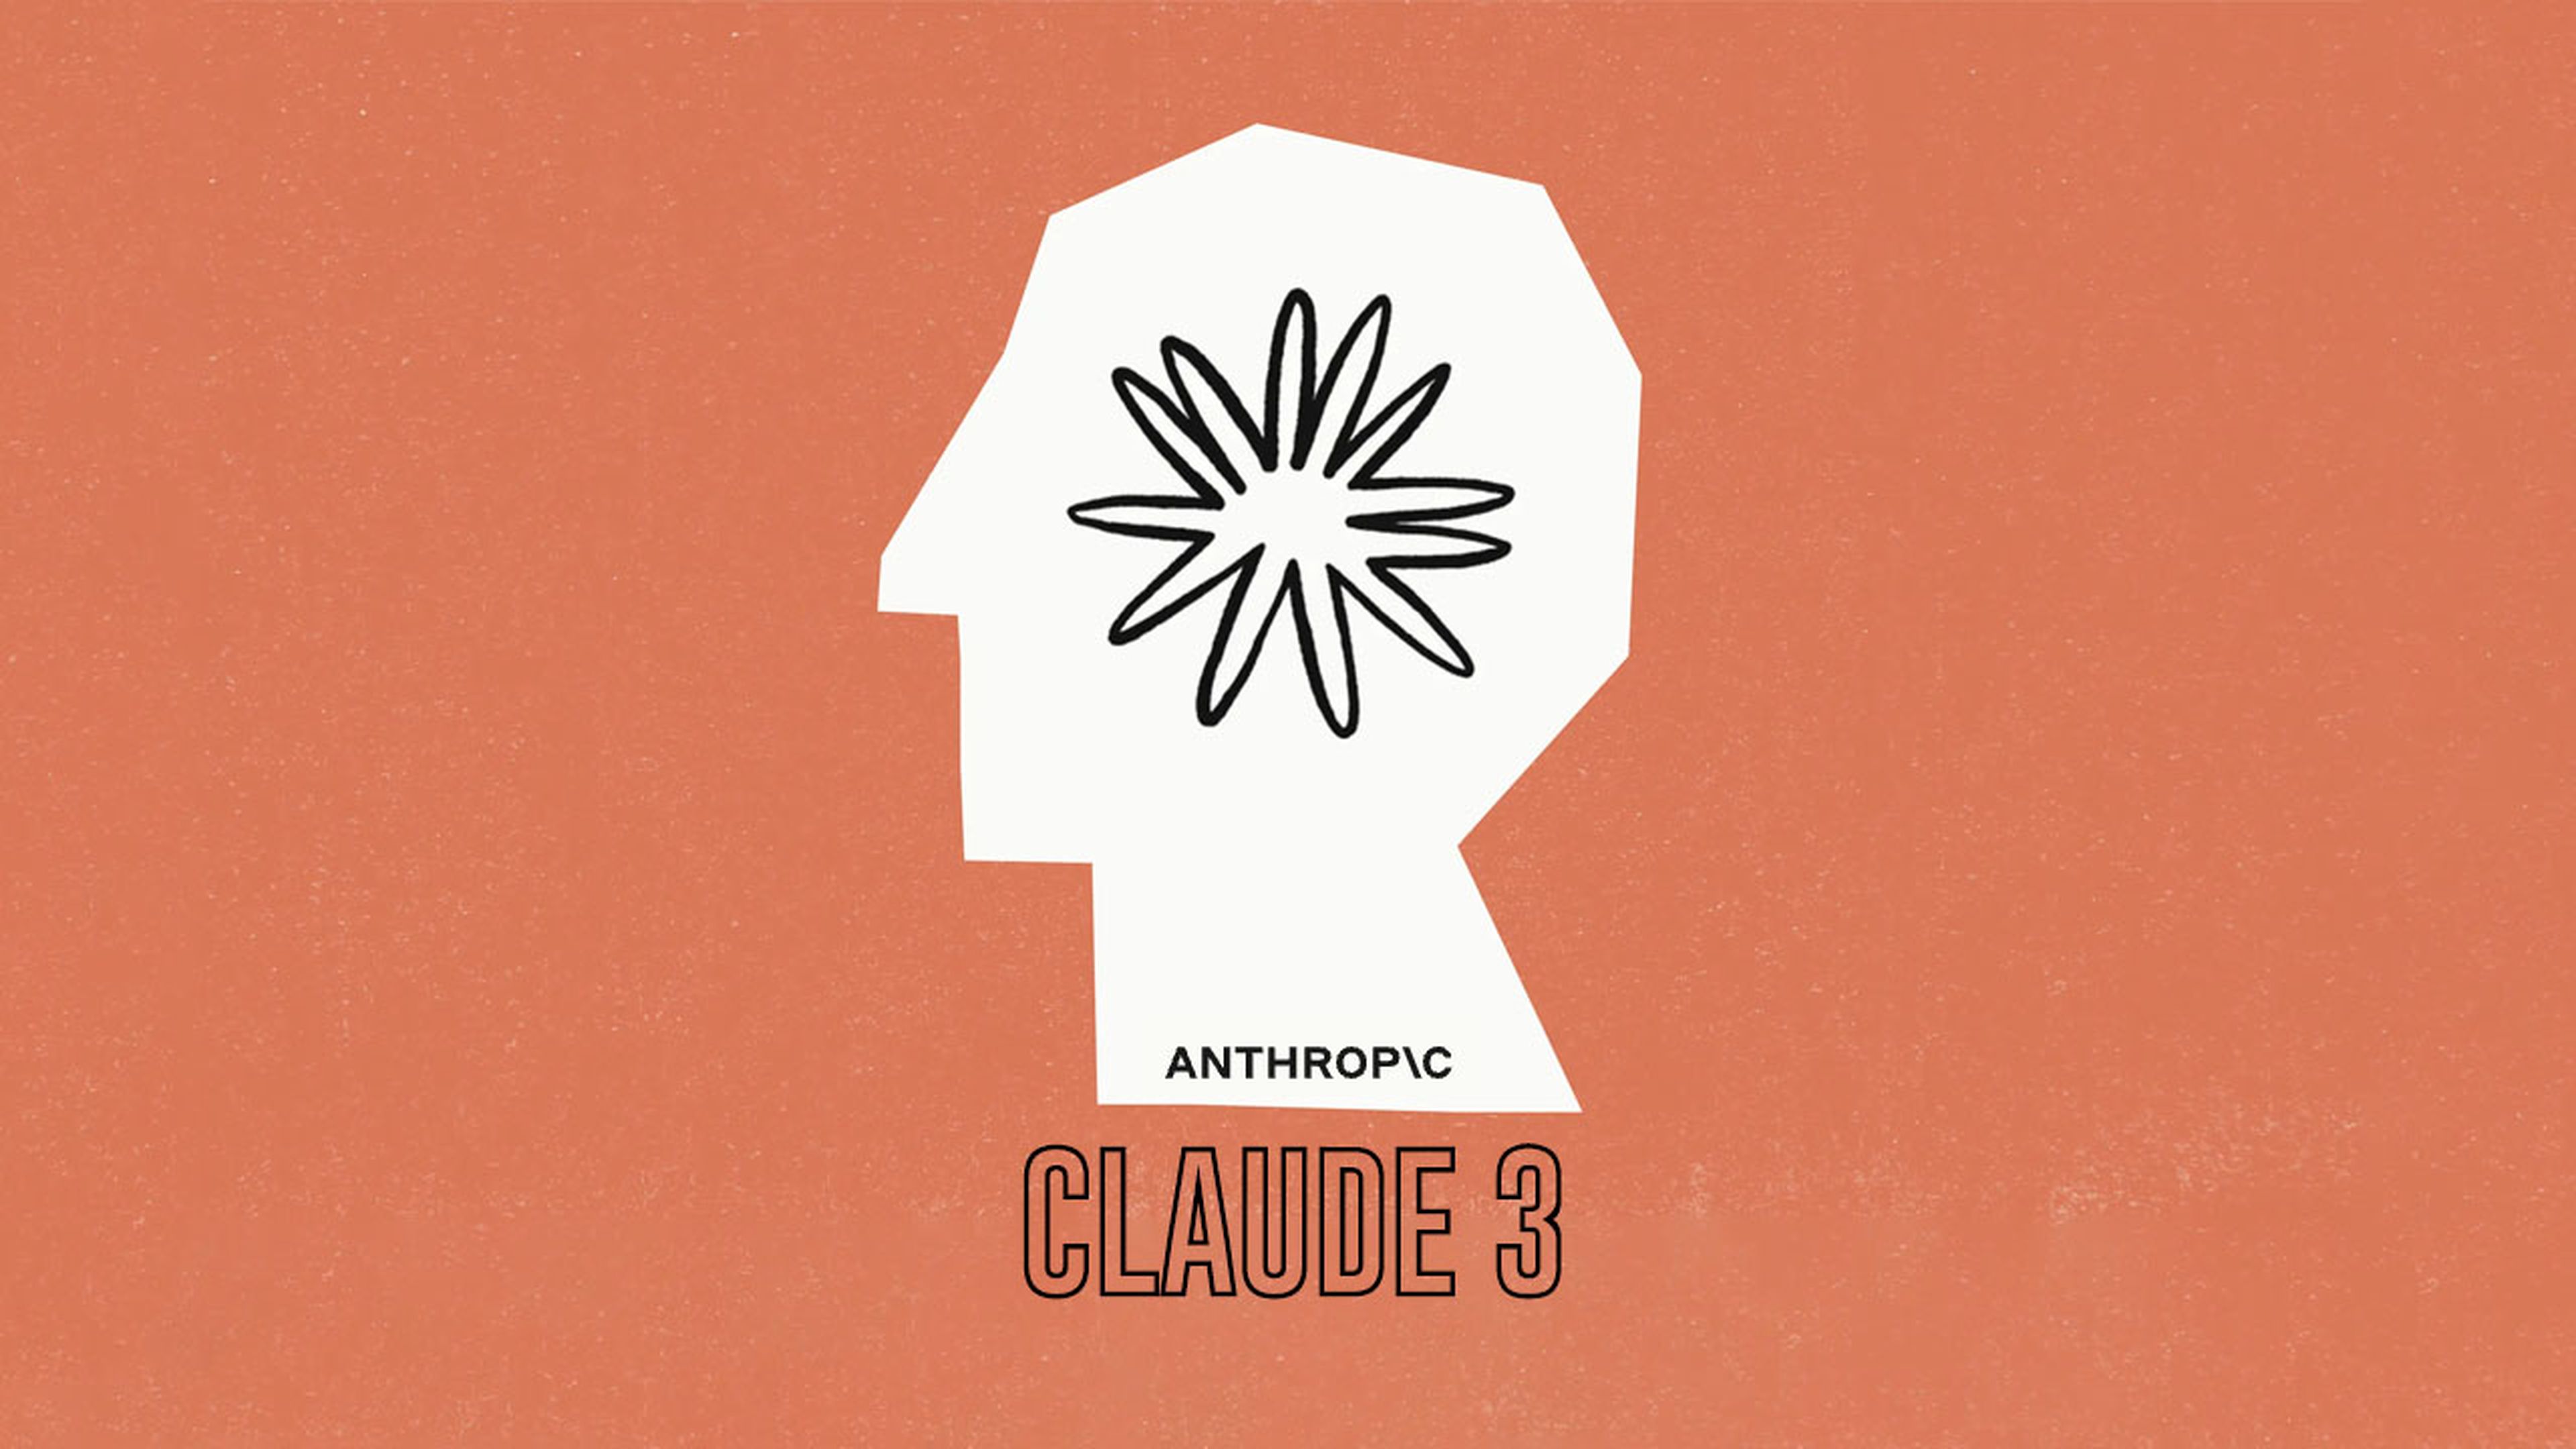 Claude 3 de Anthropic